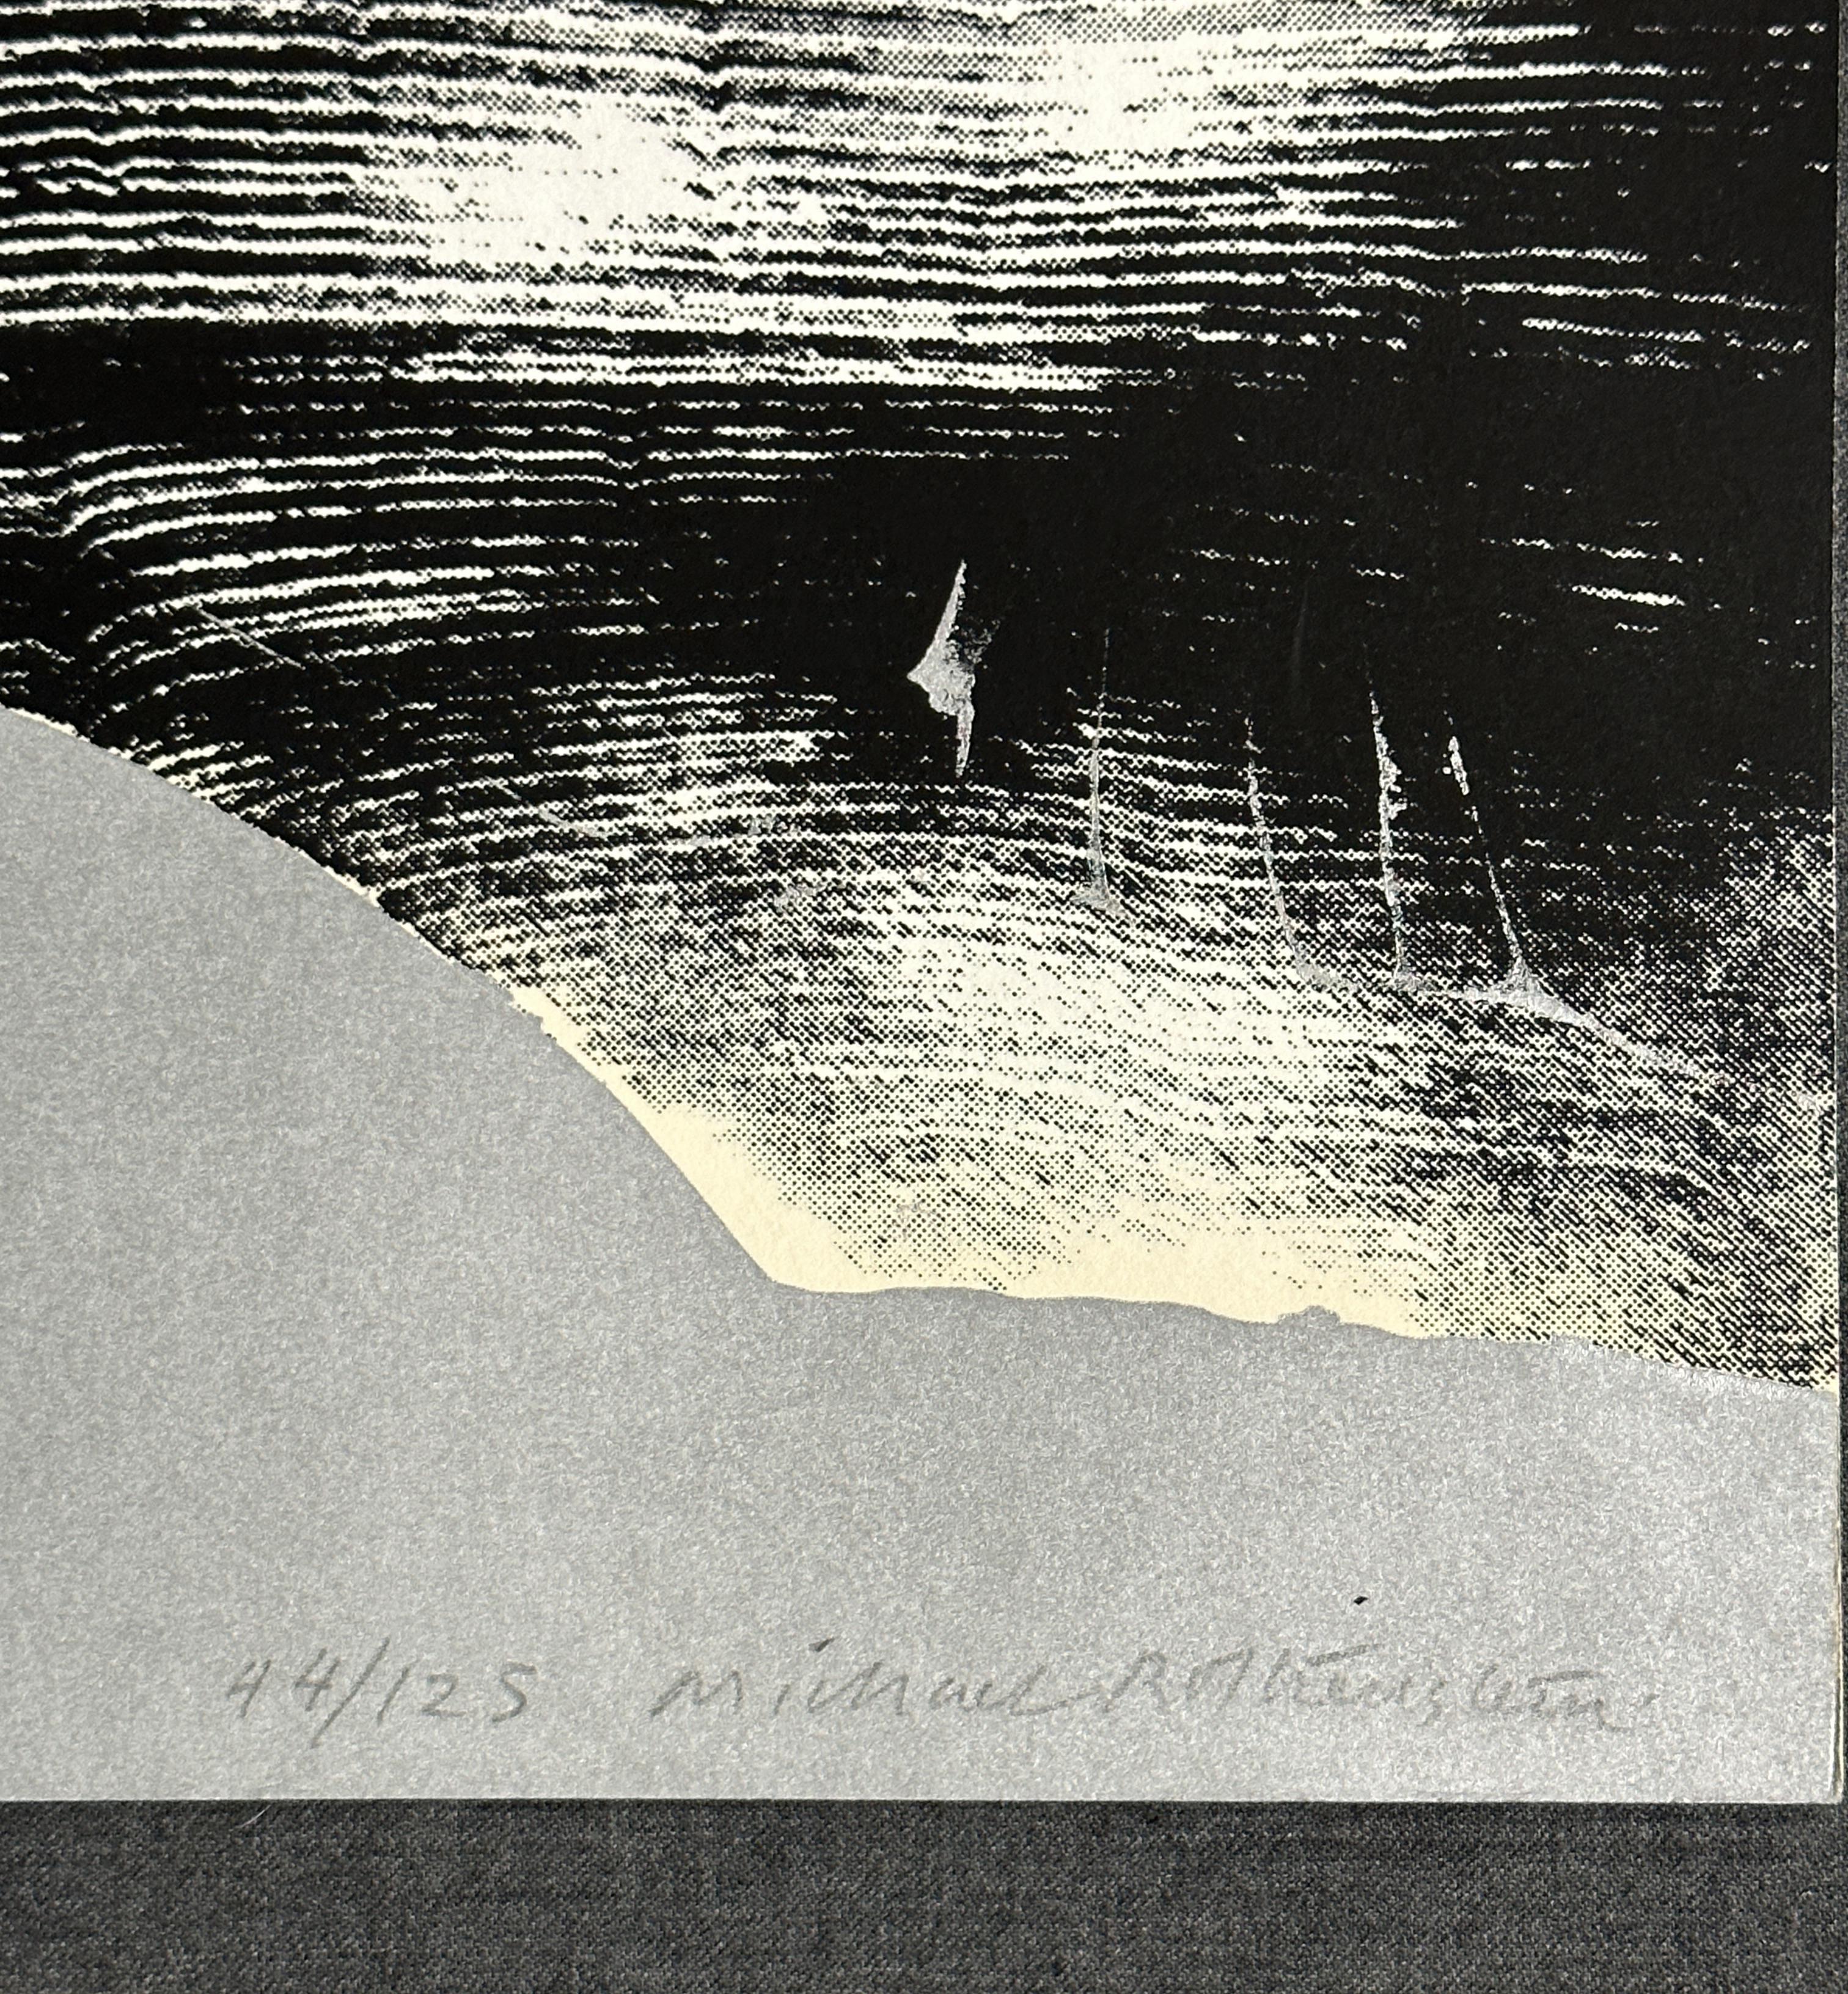 Klammer 1969  Linolschnitt-Siebdruck  (Moderne), Print, von Michael Rothenstein, RA